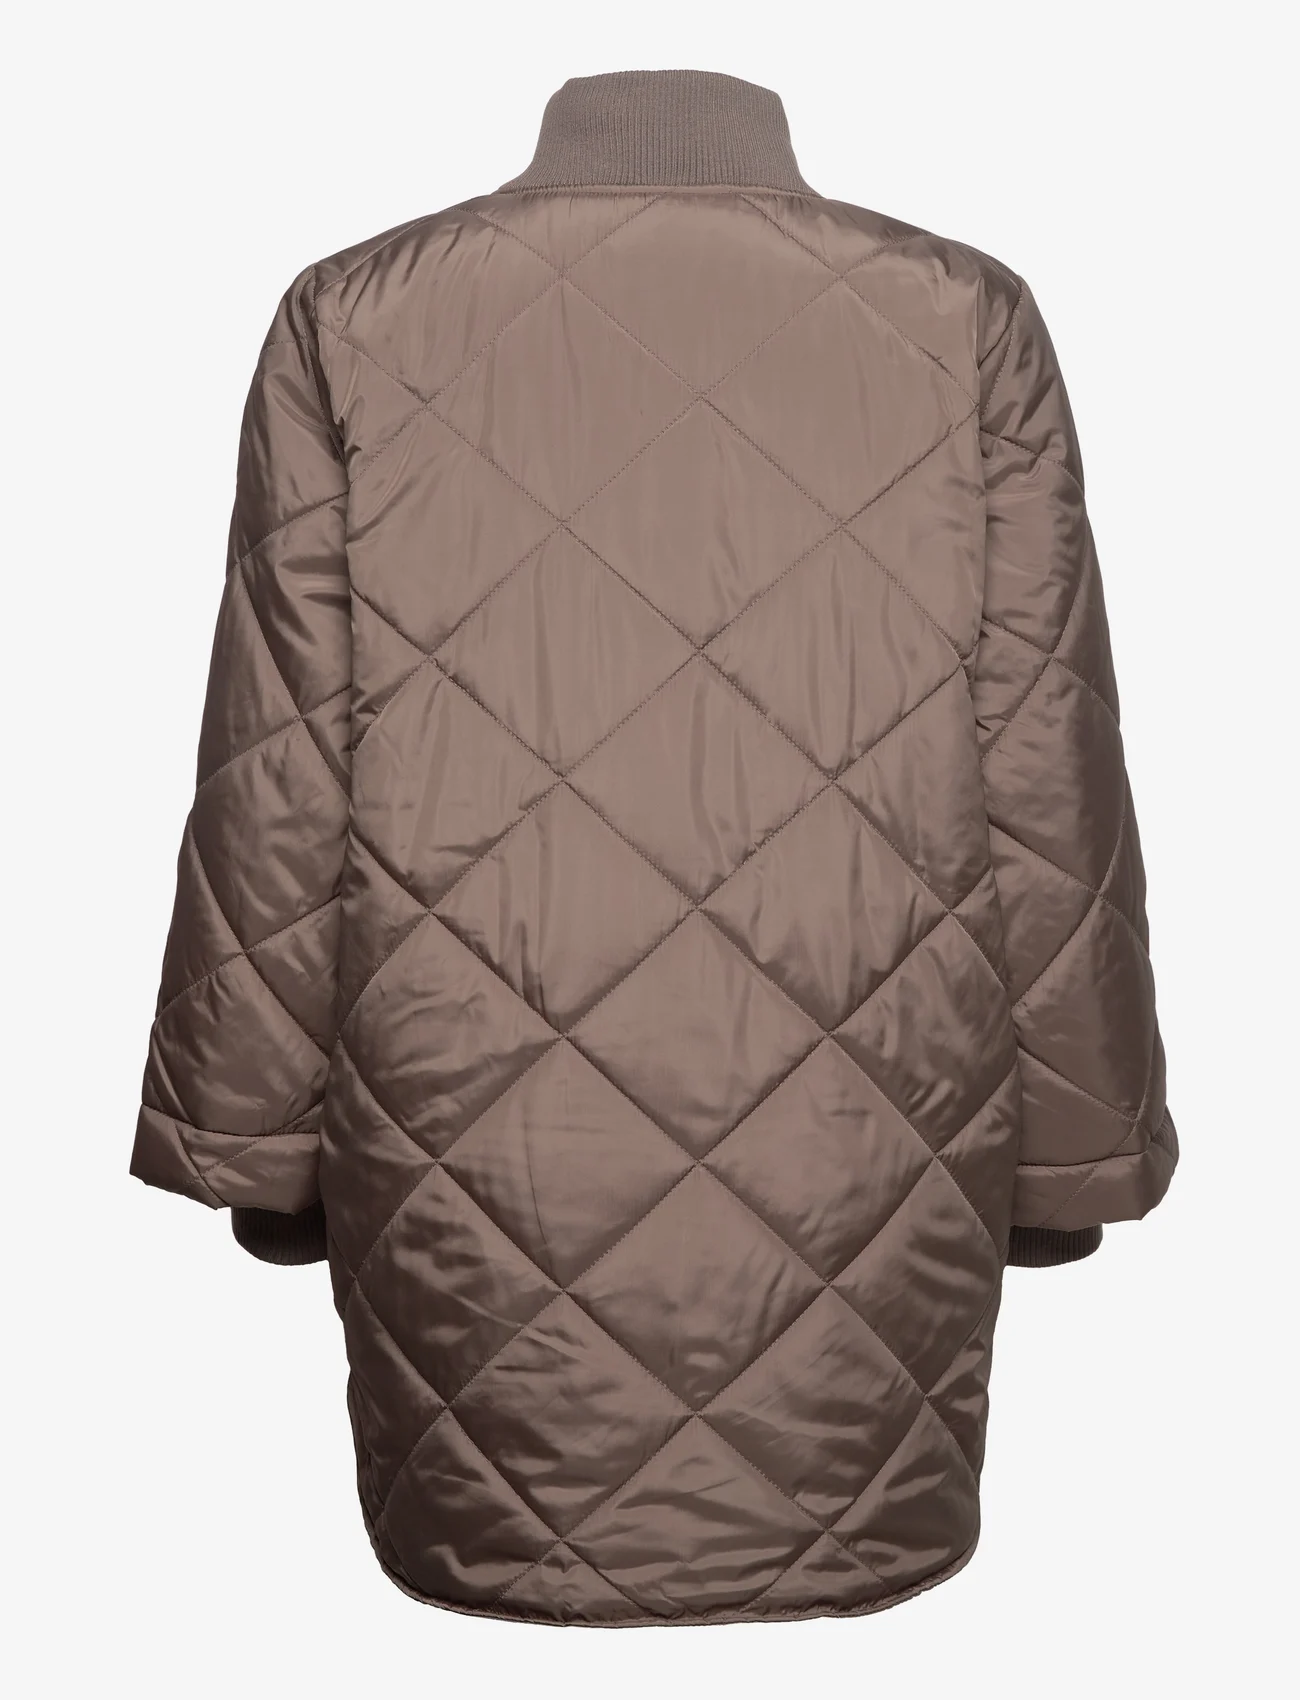 FREE/QUENT Fqprime-jacket - 699 kr. Køb Quiltede jakker fra online Boozt.com. Hurtig levering & nem